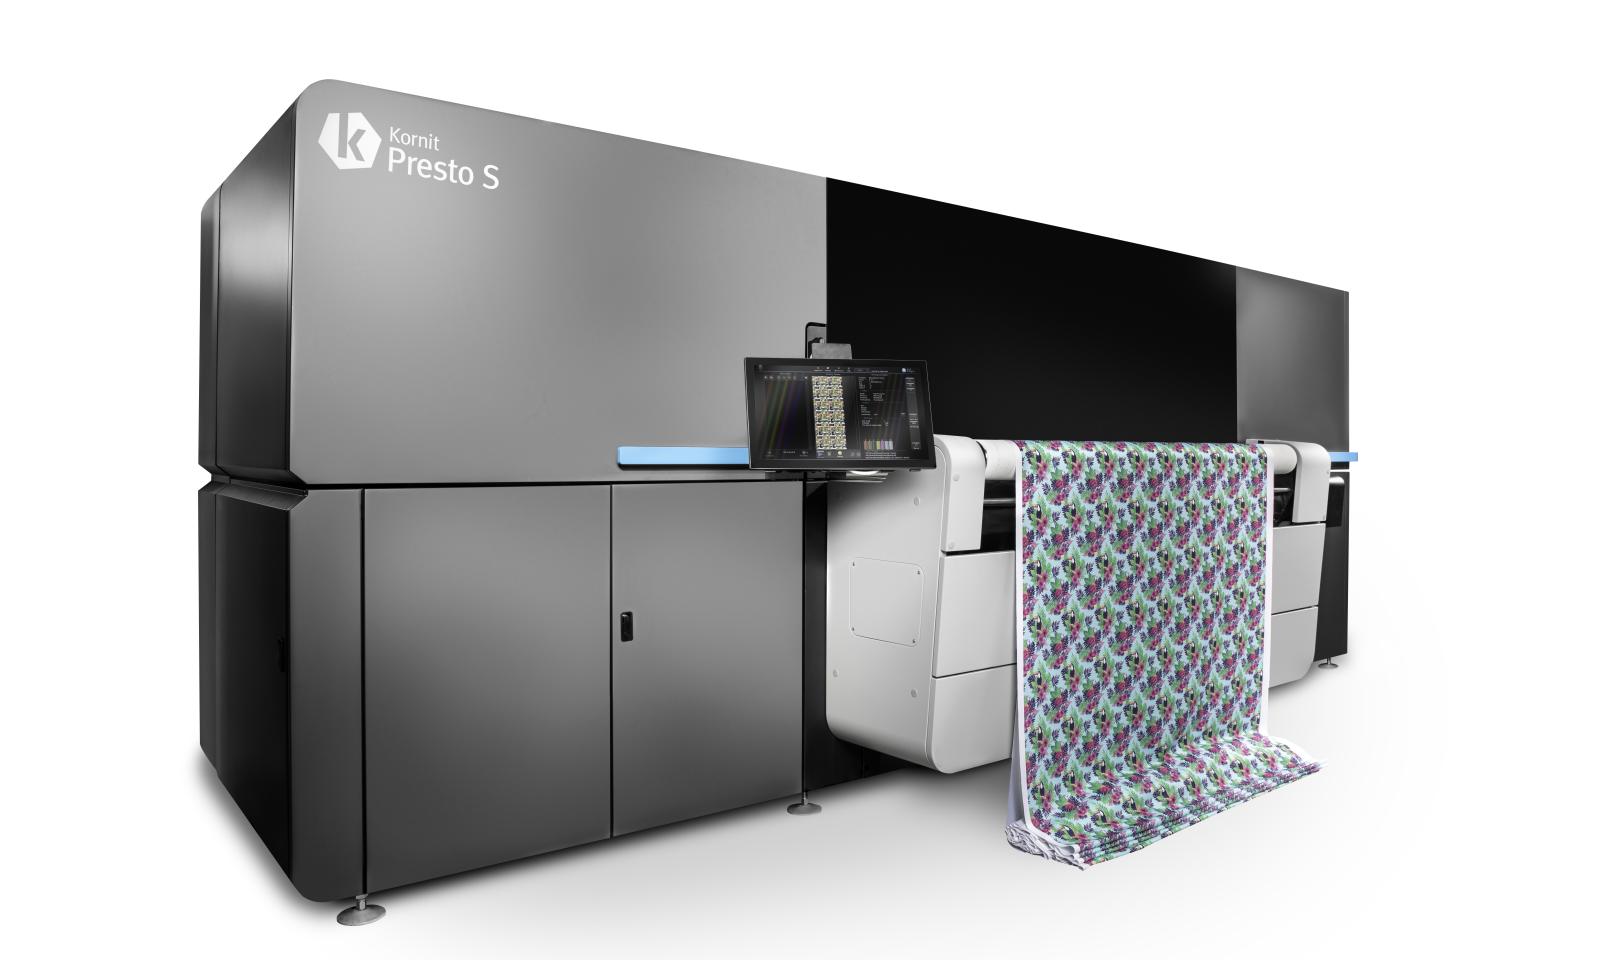 Kornit Digital анонсировала новую промышленную рулонную систему печати Kornit Presto